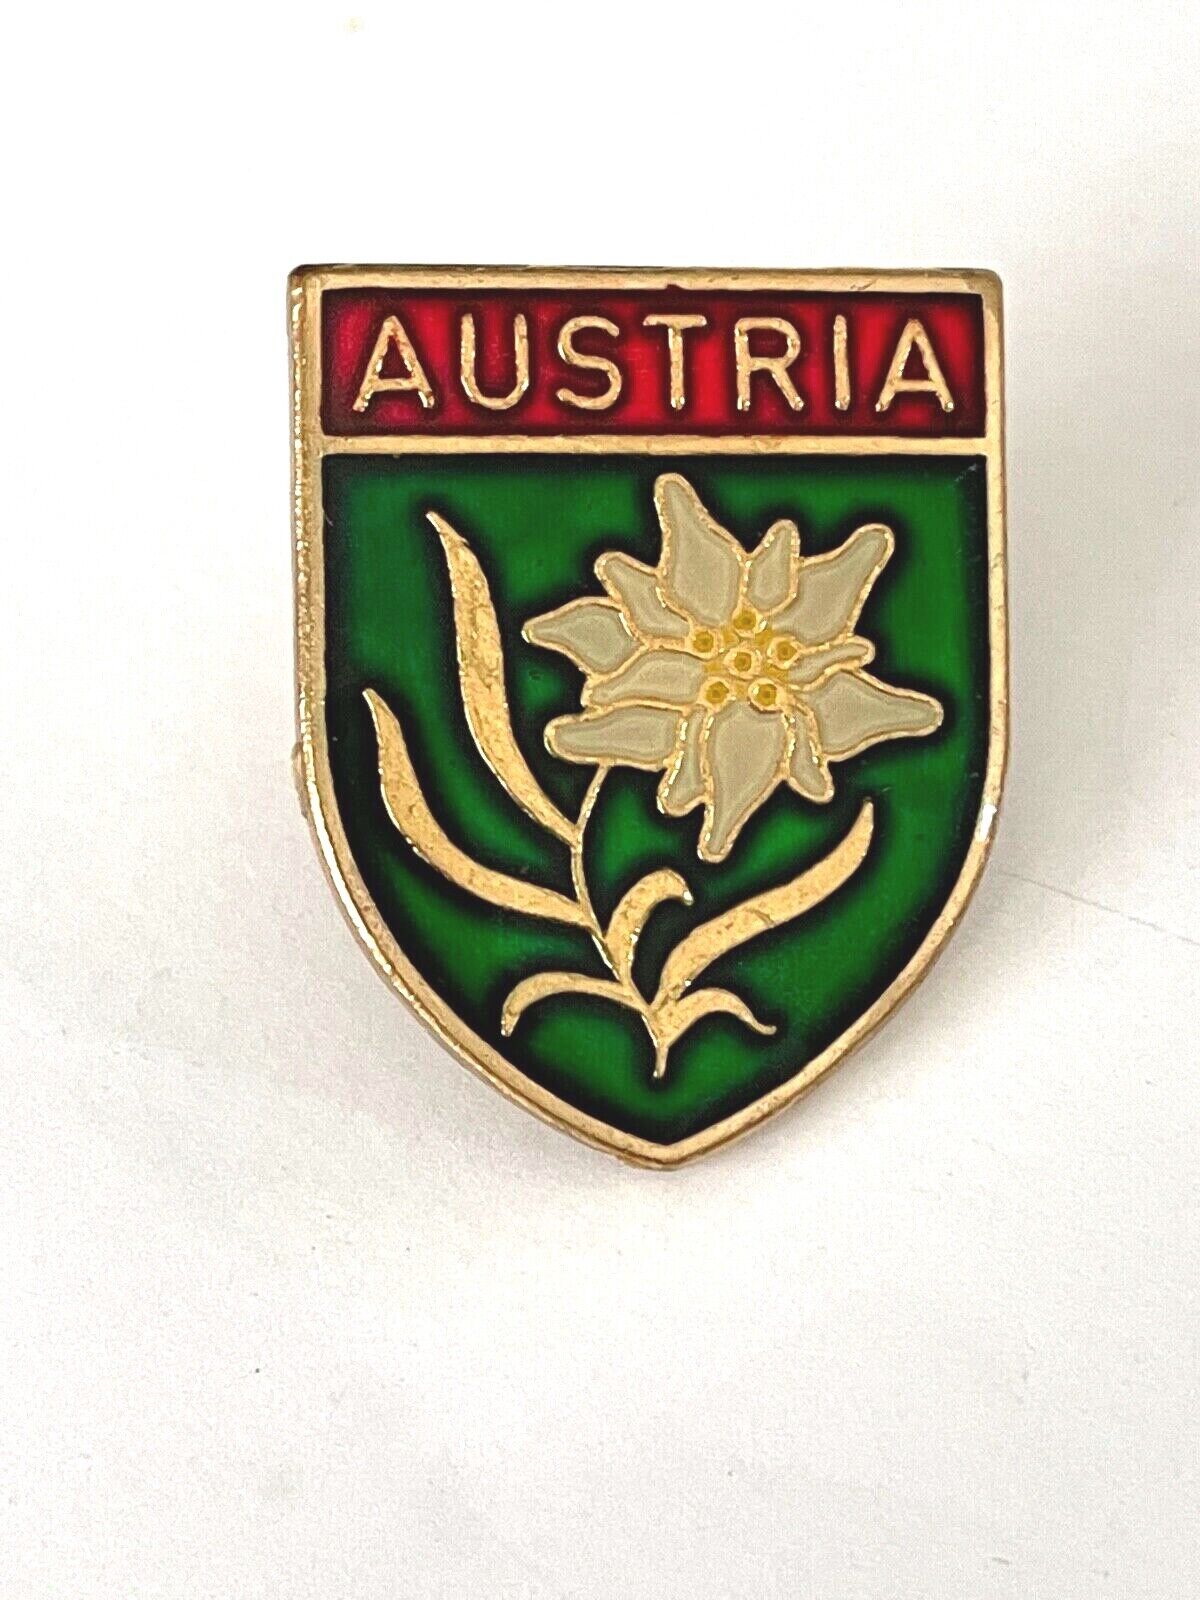 Austria Souvenir Lapel Hat Jacket Pin Crest Coat Of Arms Shield 1\